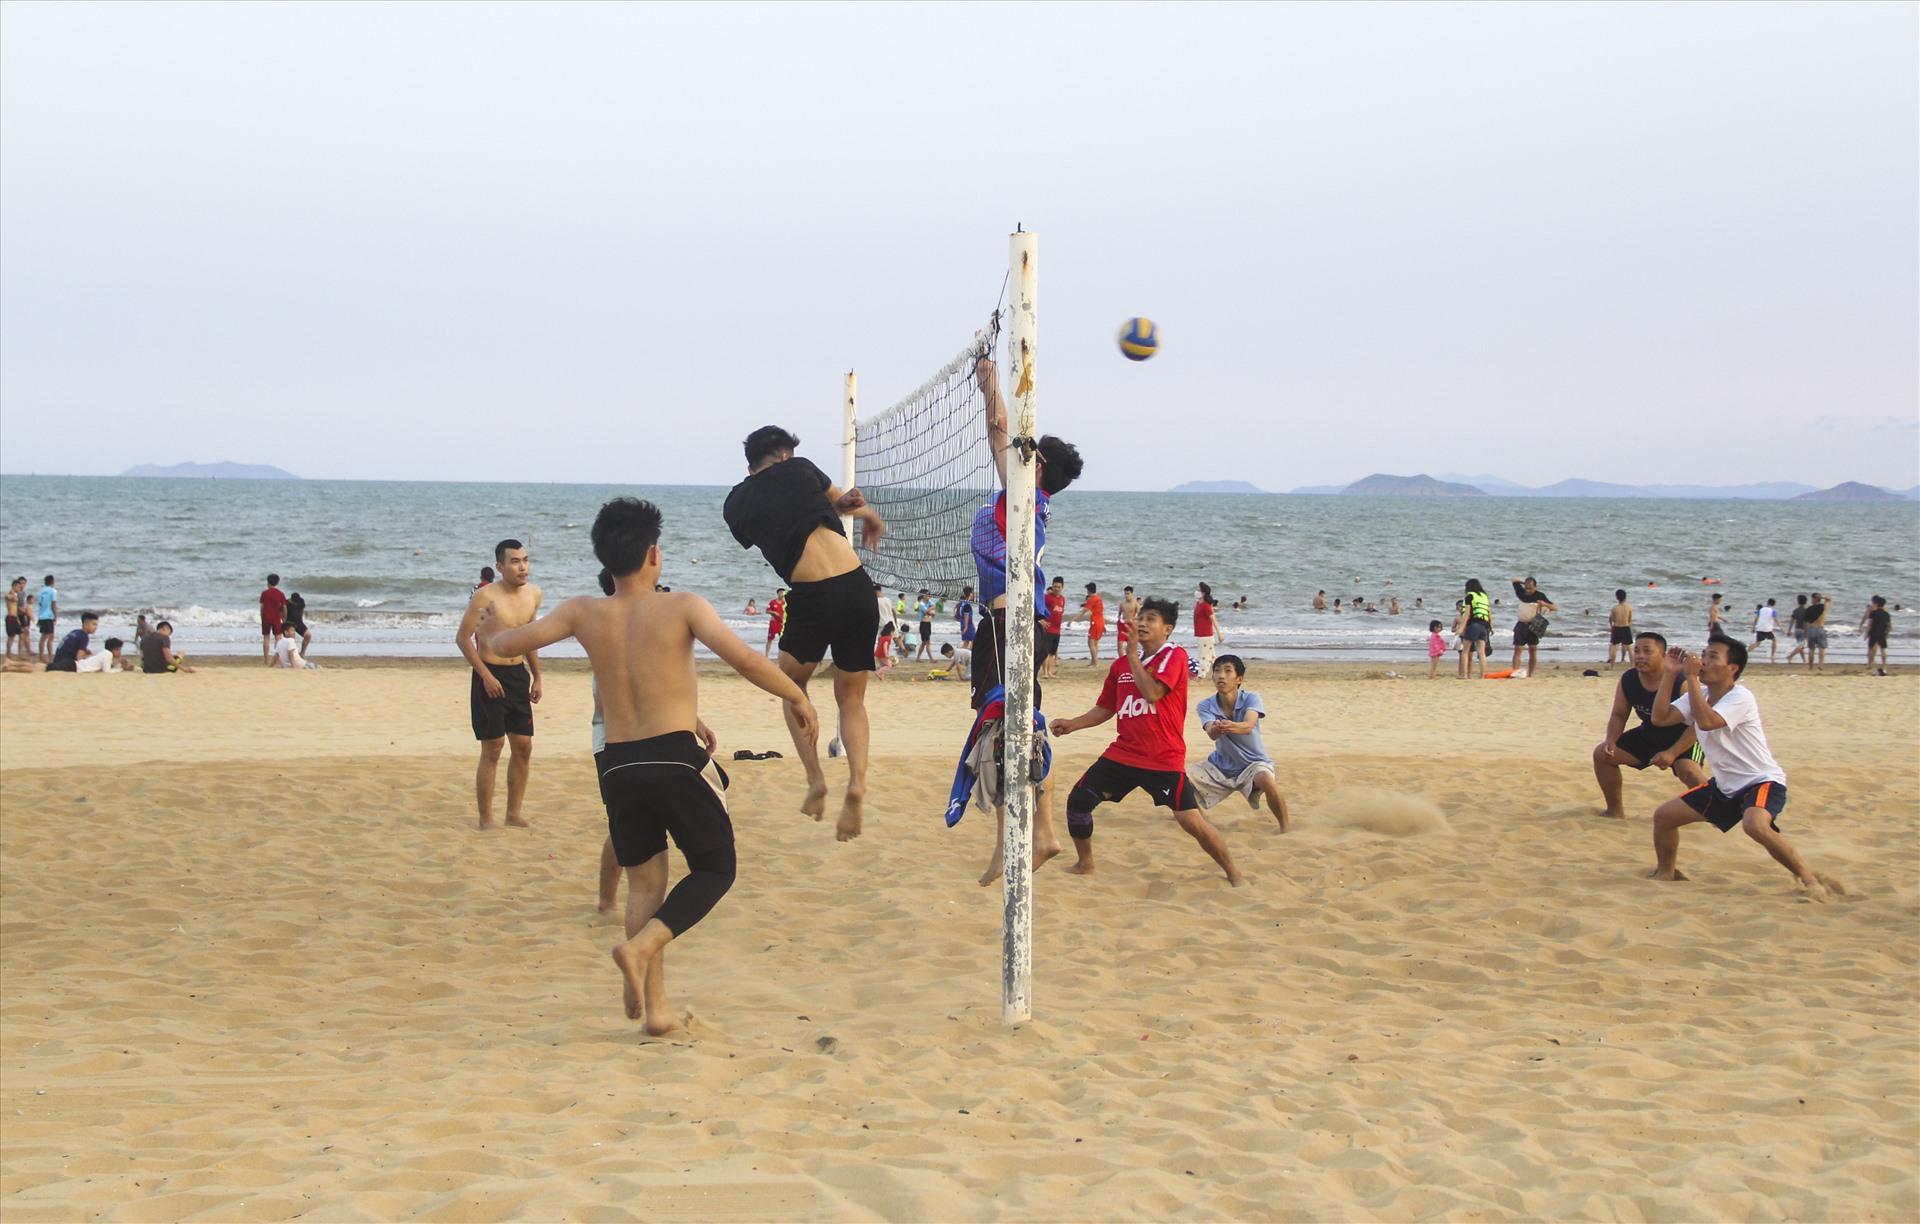 Bãi biển đông đúc người dân tụ tập thành từng nhóm: nhóm thì chơi đùa, nhóm tắm biển, nhóm đánh bóng chuyền....